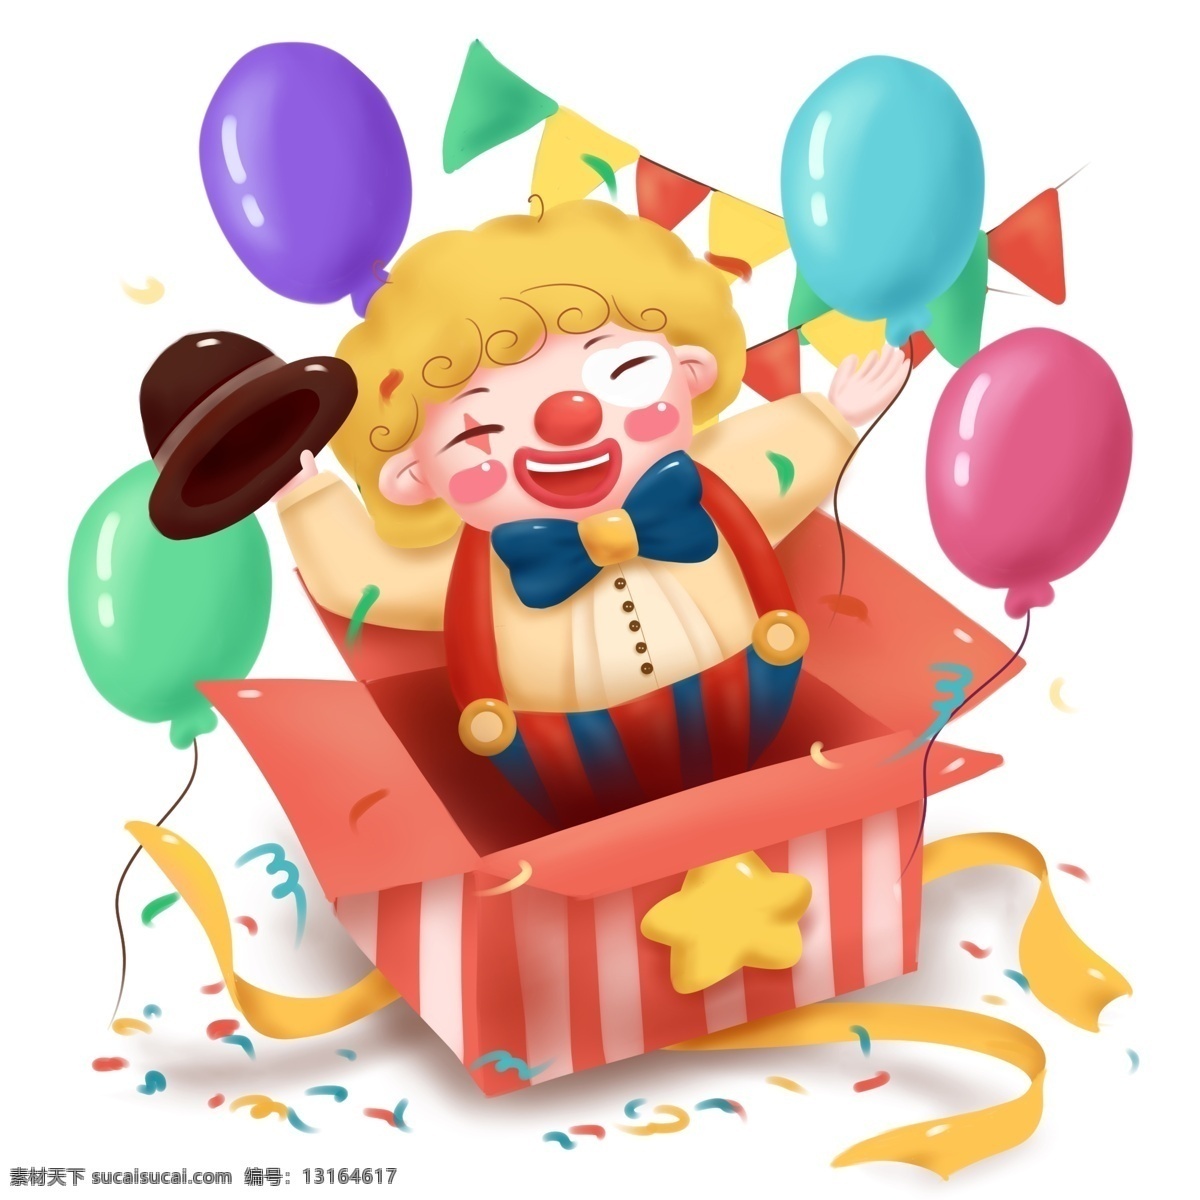 手绘 卡通 可爱 愚人节 小丑 形象 商用 插画 配 图 人物 欢乐小丑 气球 彩旗 快乐 高兴 庆祝 儿童 少儿 开心 元素